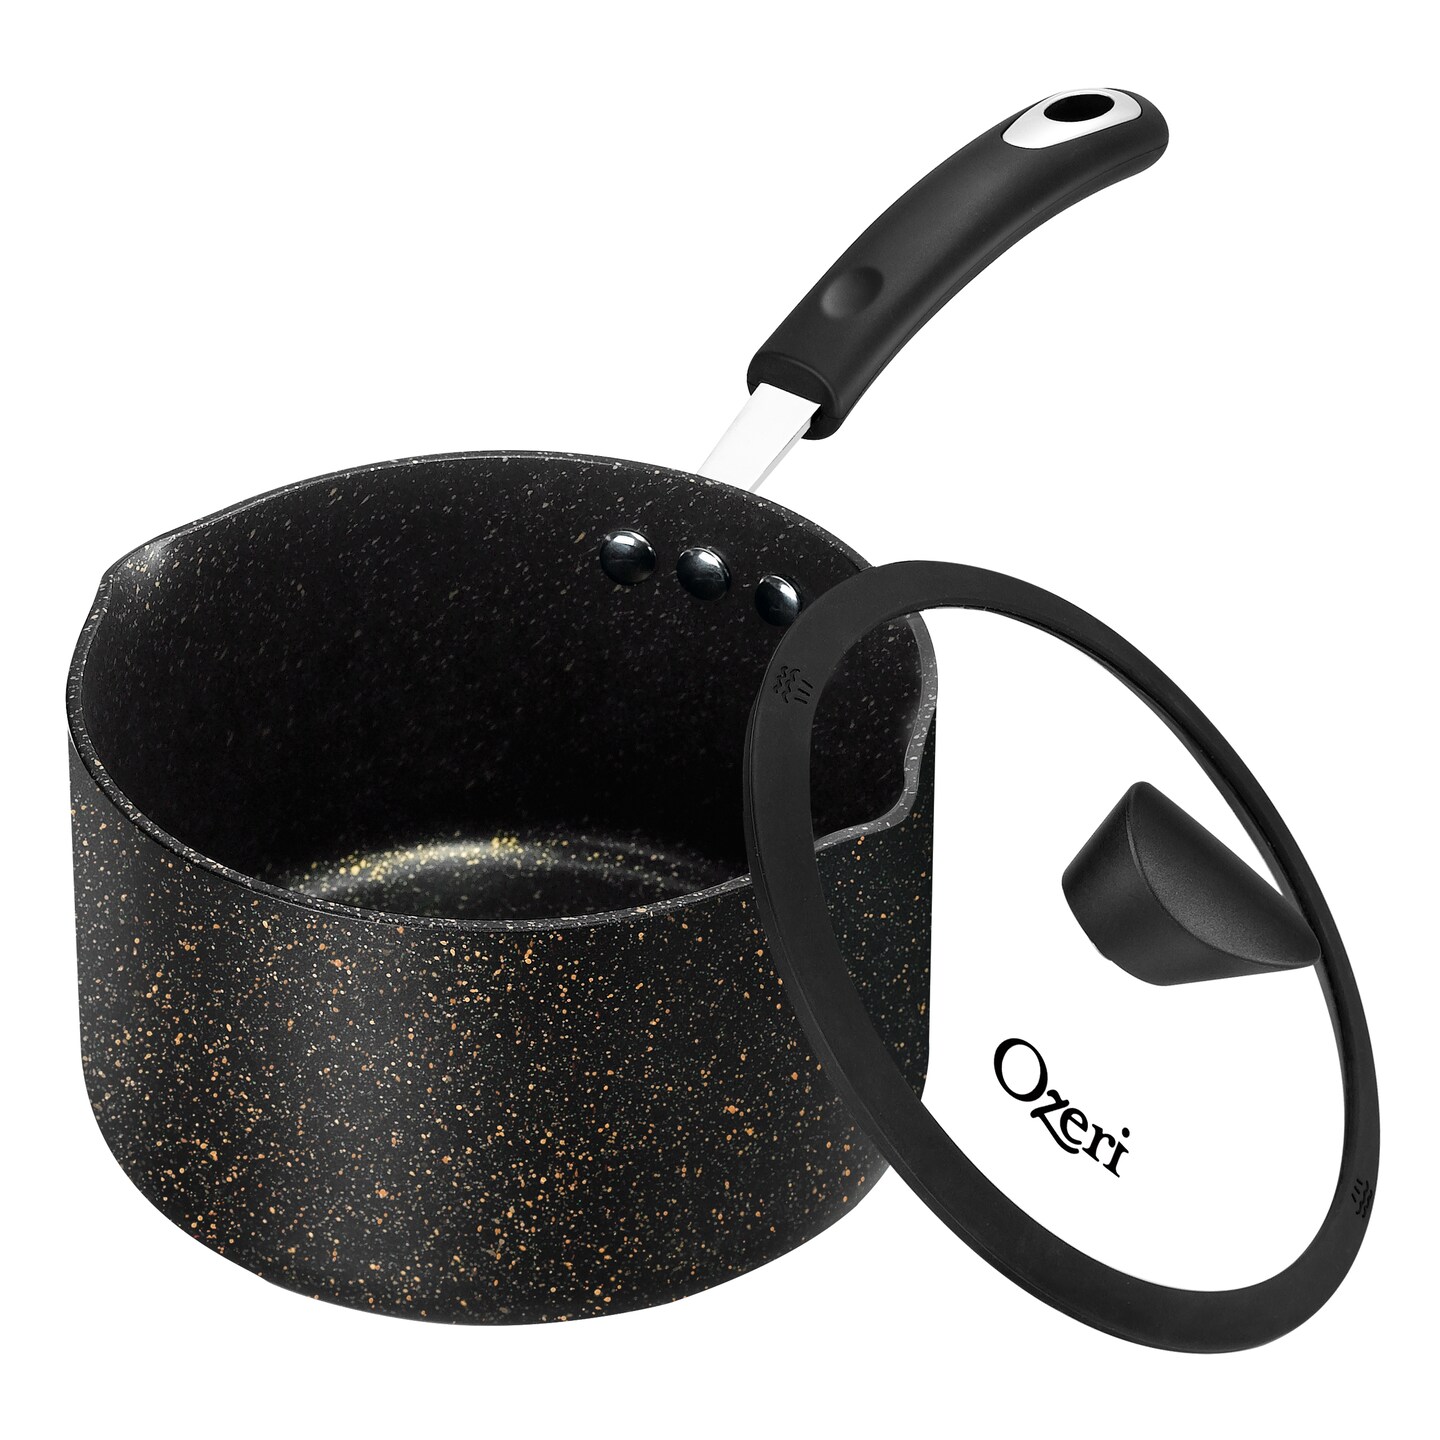 Ozeri Stone Earth Non-Stick Frying Pan, Black/White